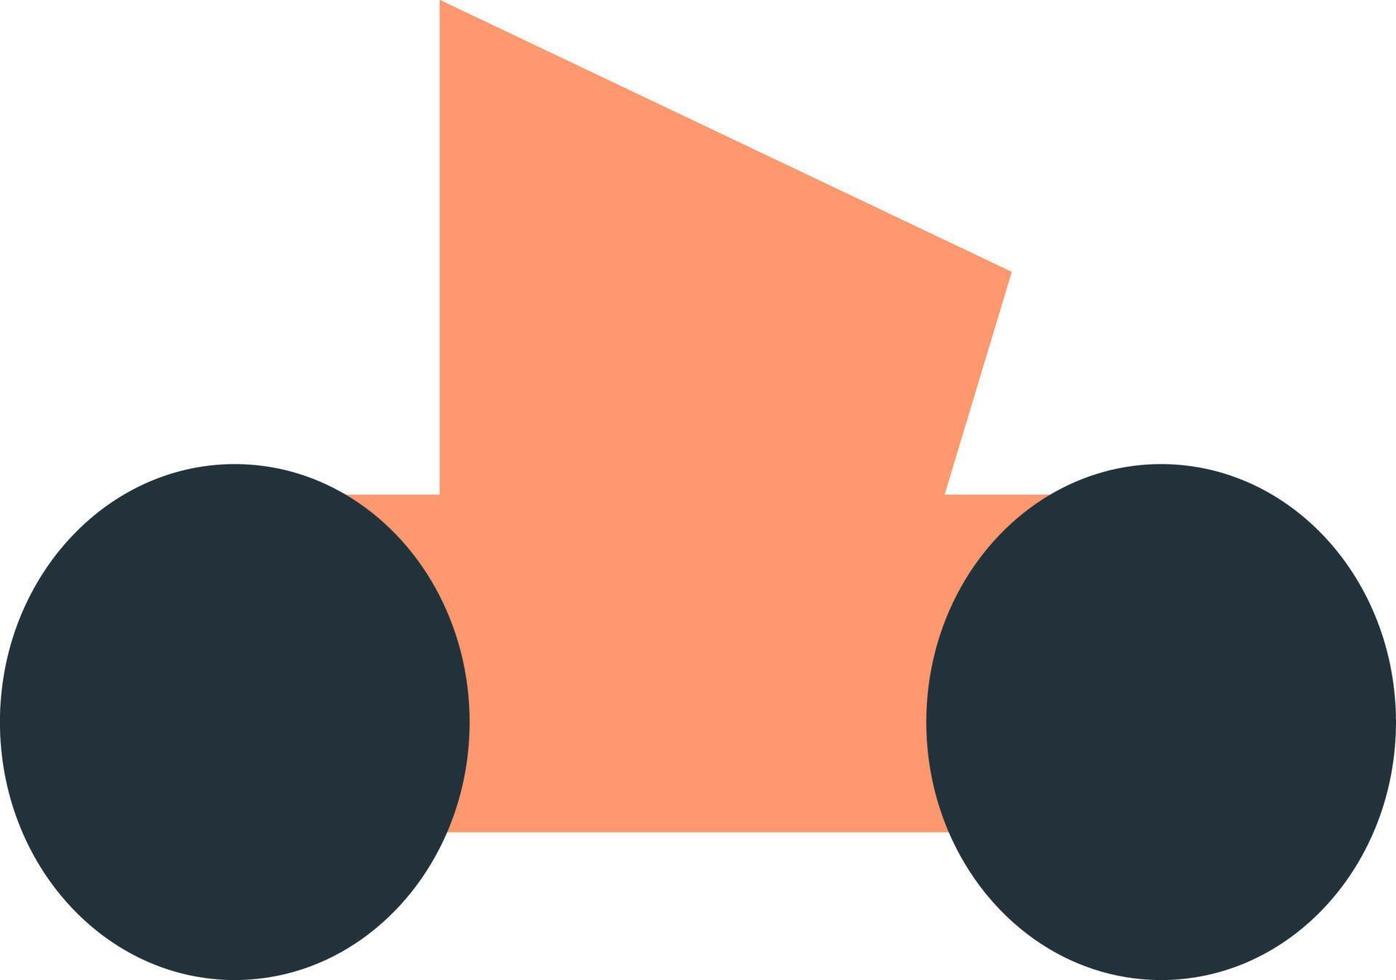 pequeño coche de juguete naranja, ilustración, vector sobre fondo blanco.